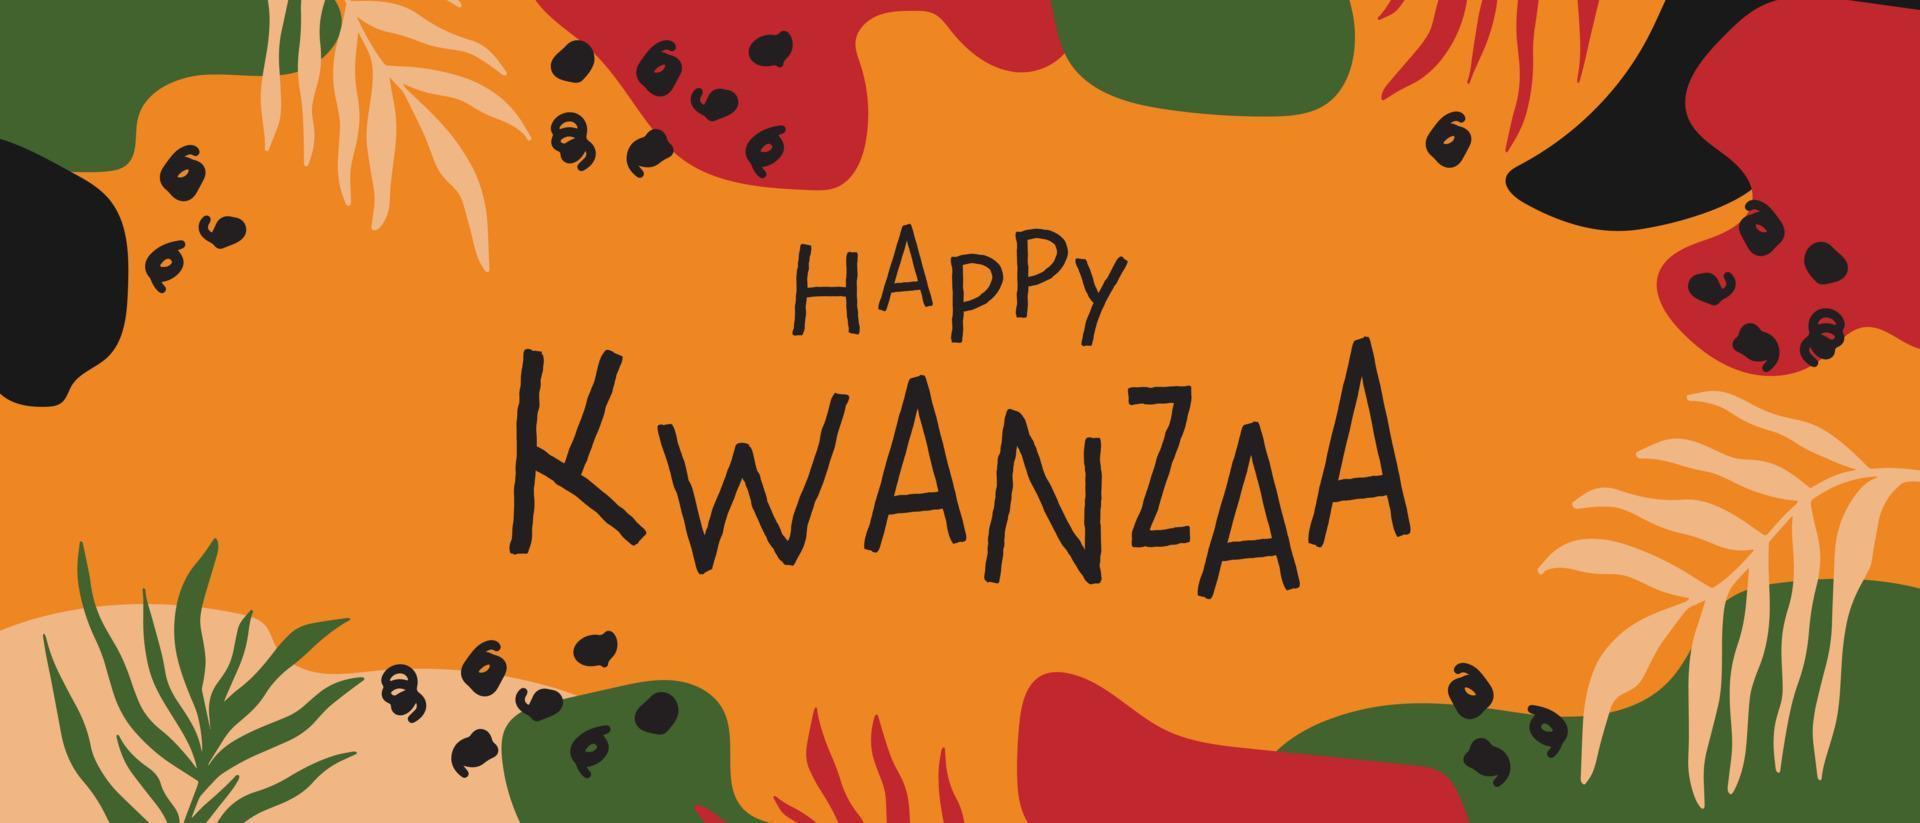 gelukkig kwanzaa abstract helder kleurrijk horizontaal lang banier ontwerp met willekeurig biologisch vormen, palm bladeren. vector sjabloon voor kwanzaa Afrikaanse Amerikaans viering in usa.act,